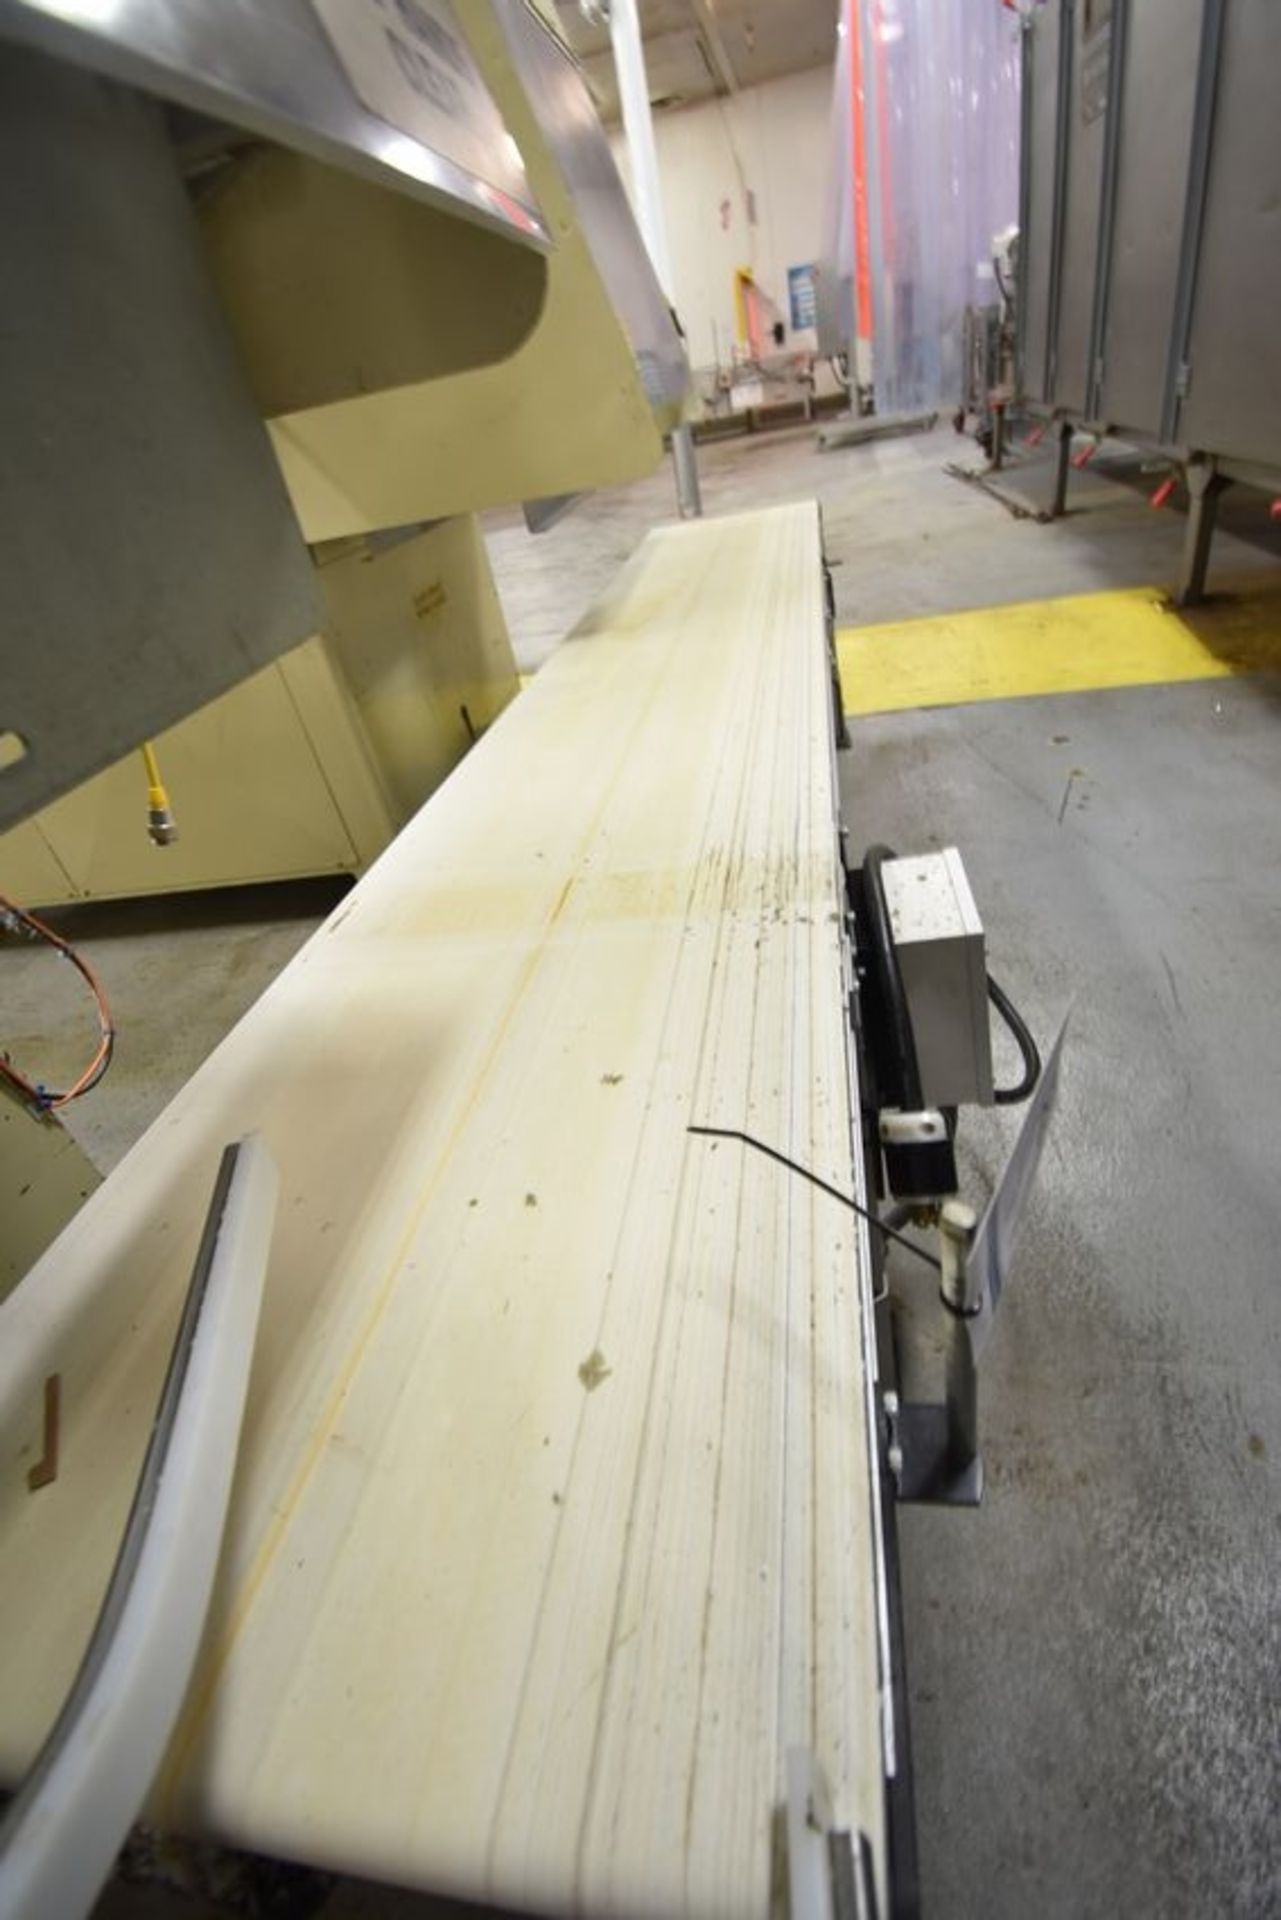 Dorner Stainless Conveyor | Stainless Transfer conveyor. Plastic Belt. 20" wide x 10' long. | MODEL#